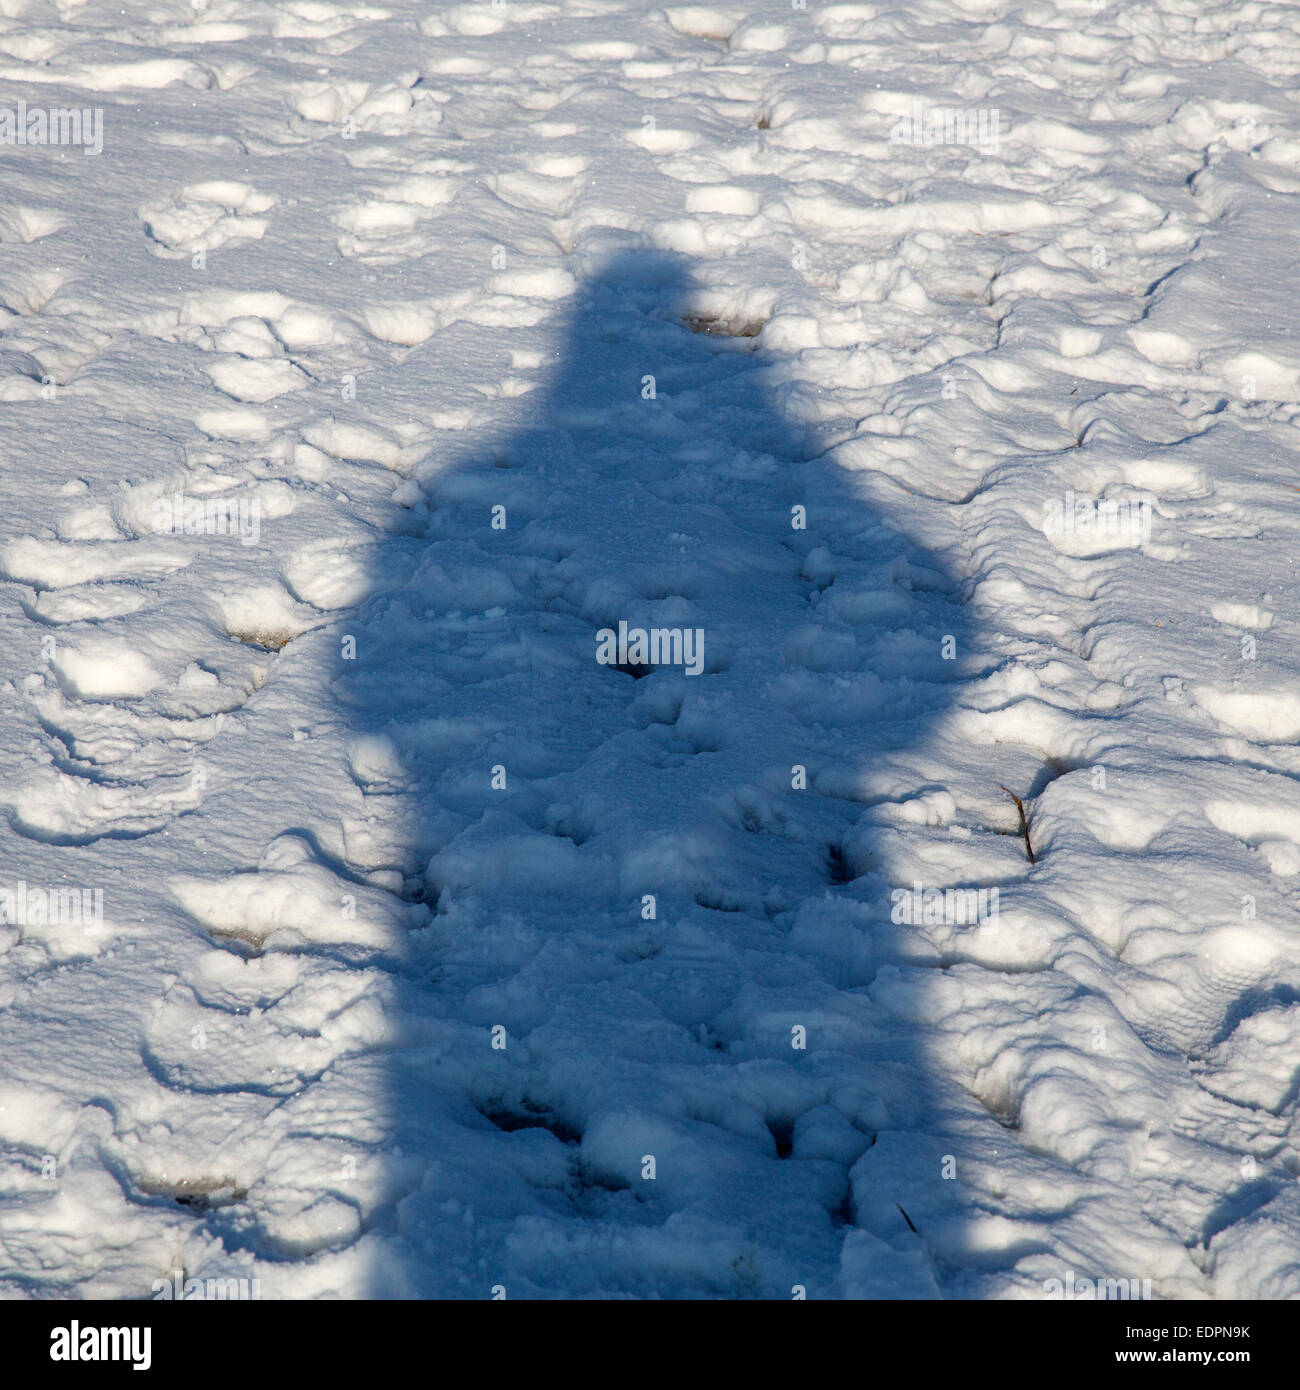 Schatten einer Person im Schnee Stockfoto